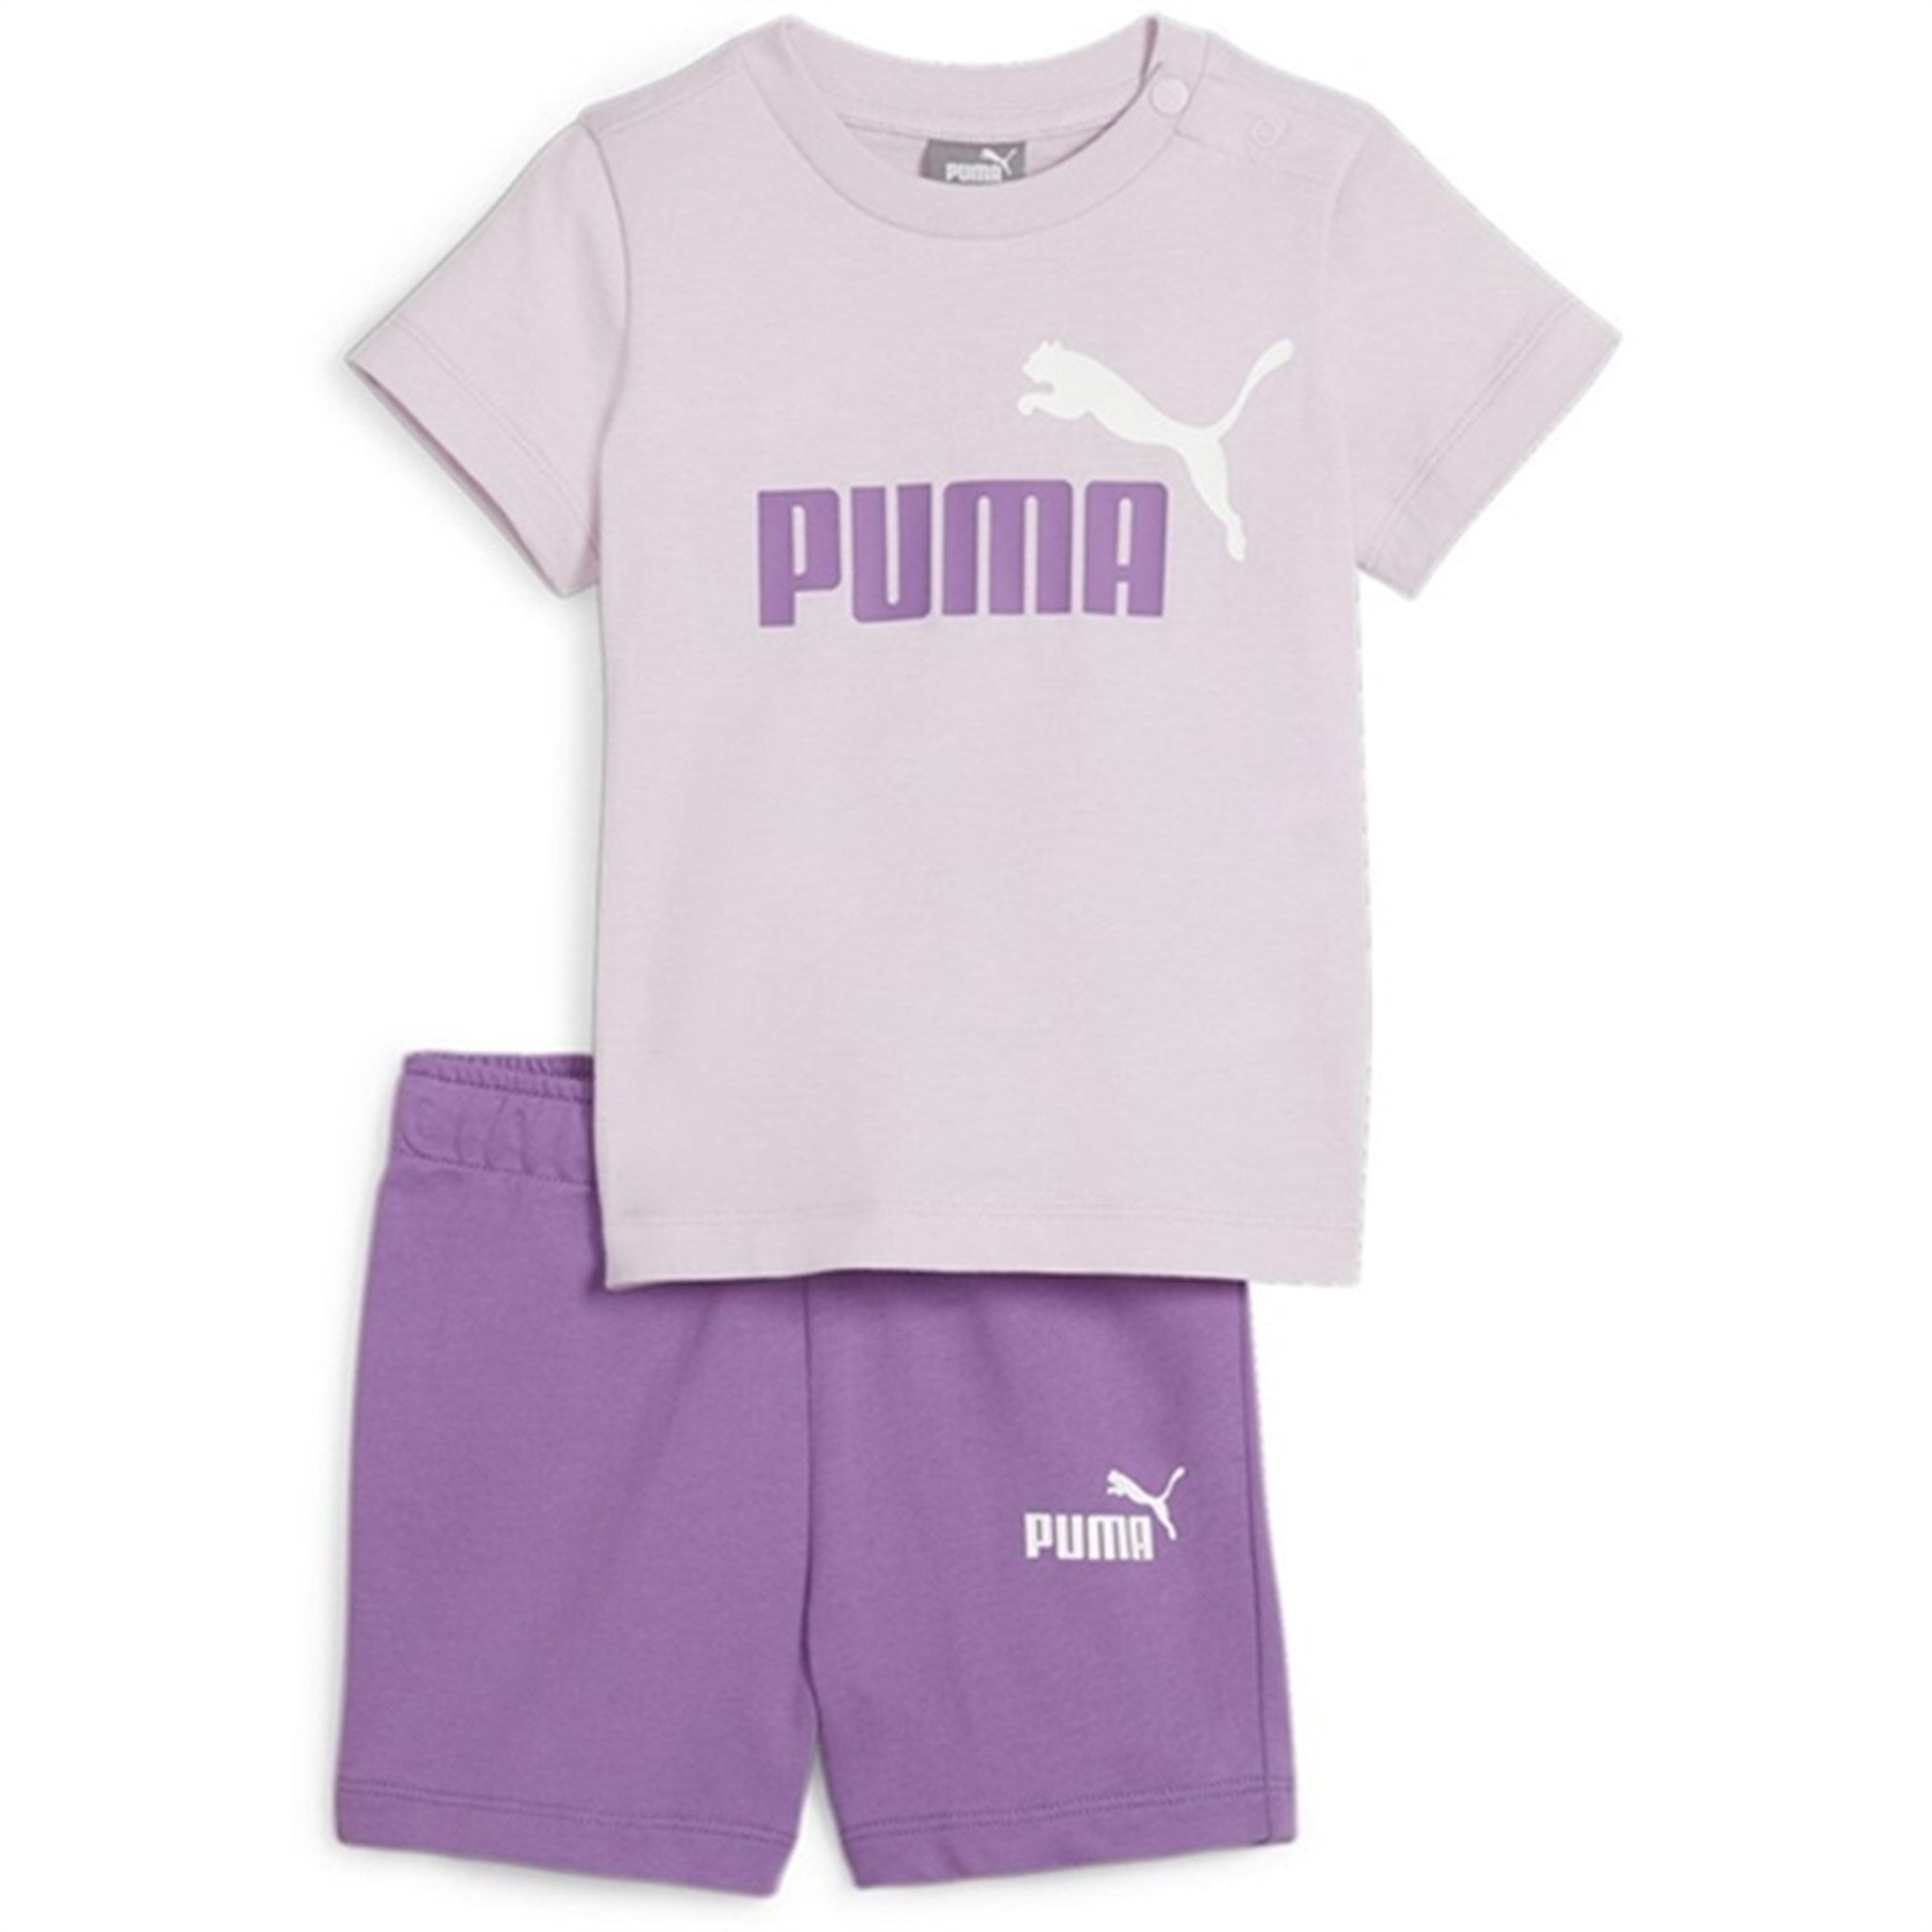 Puma Minicats T-Shirt And Shorts Set Purple